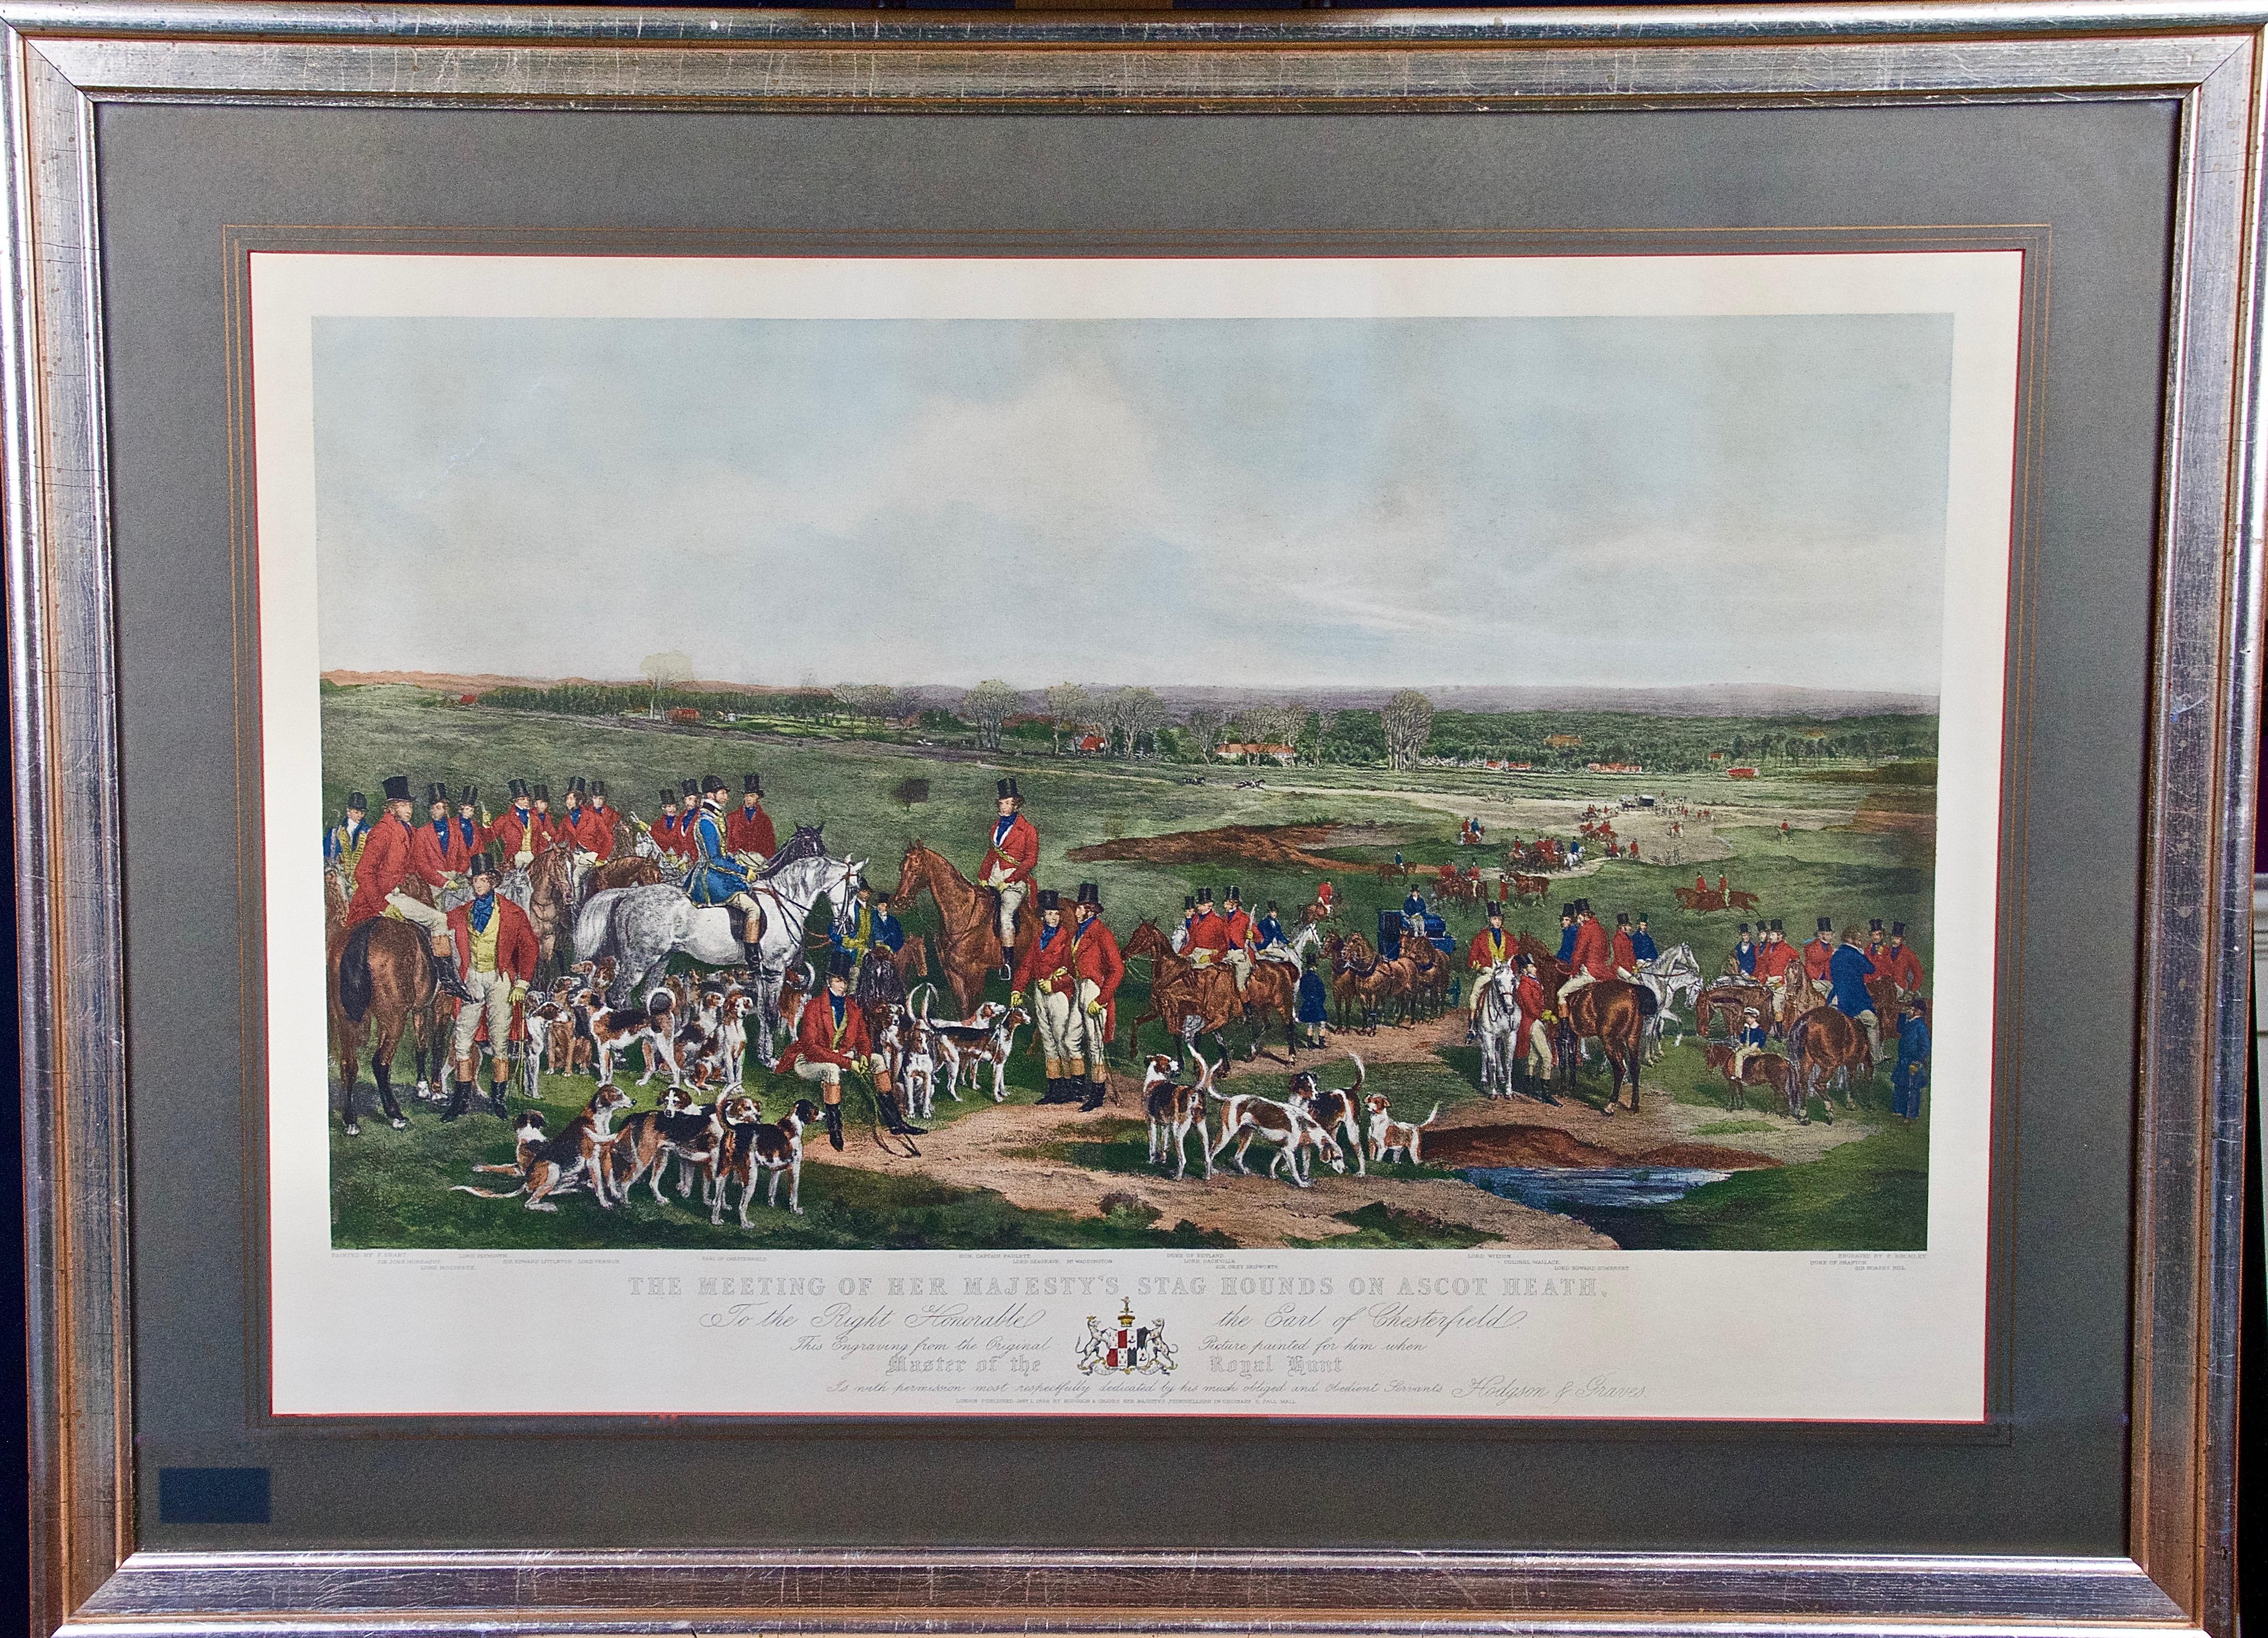 Animal Print Francis Grant  - Les chiens de chasse de Sa Majesté sur Ascot, scène de chasse britannique colorée du 19e siècle